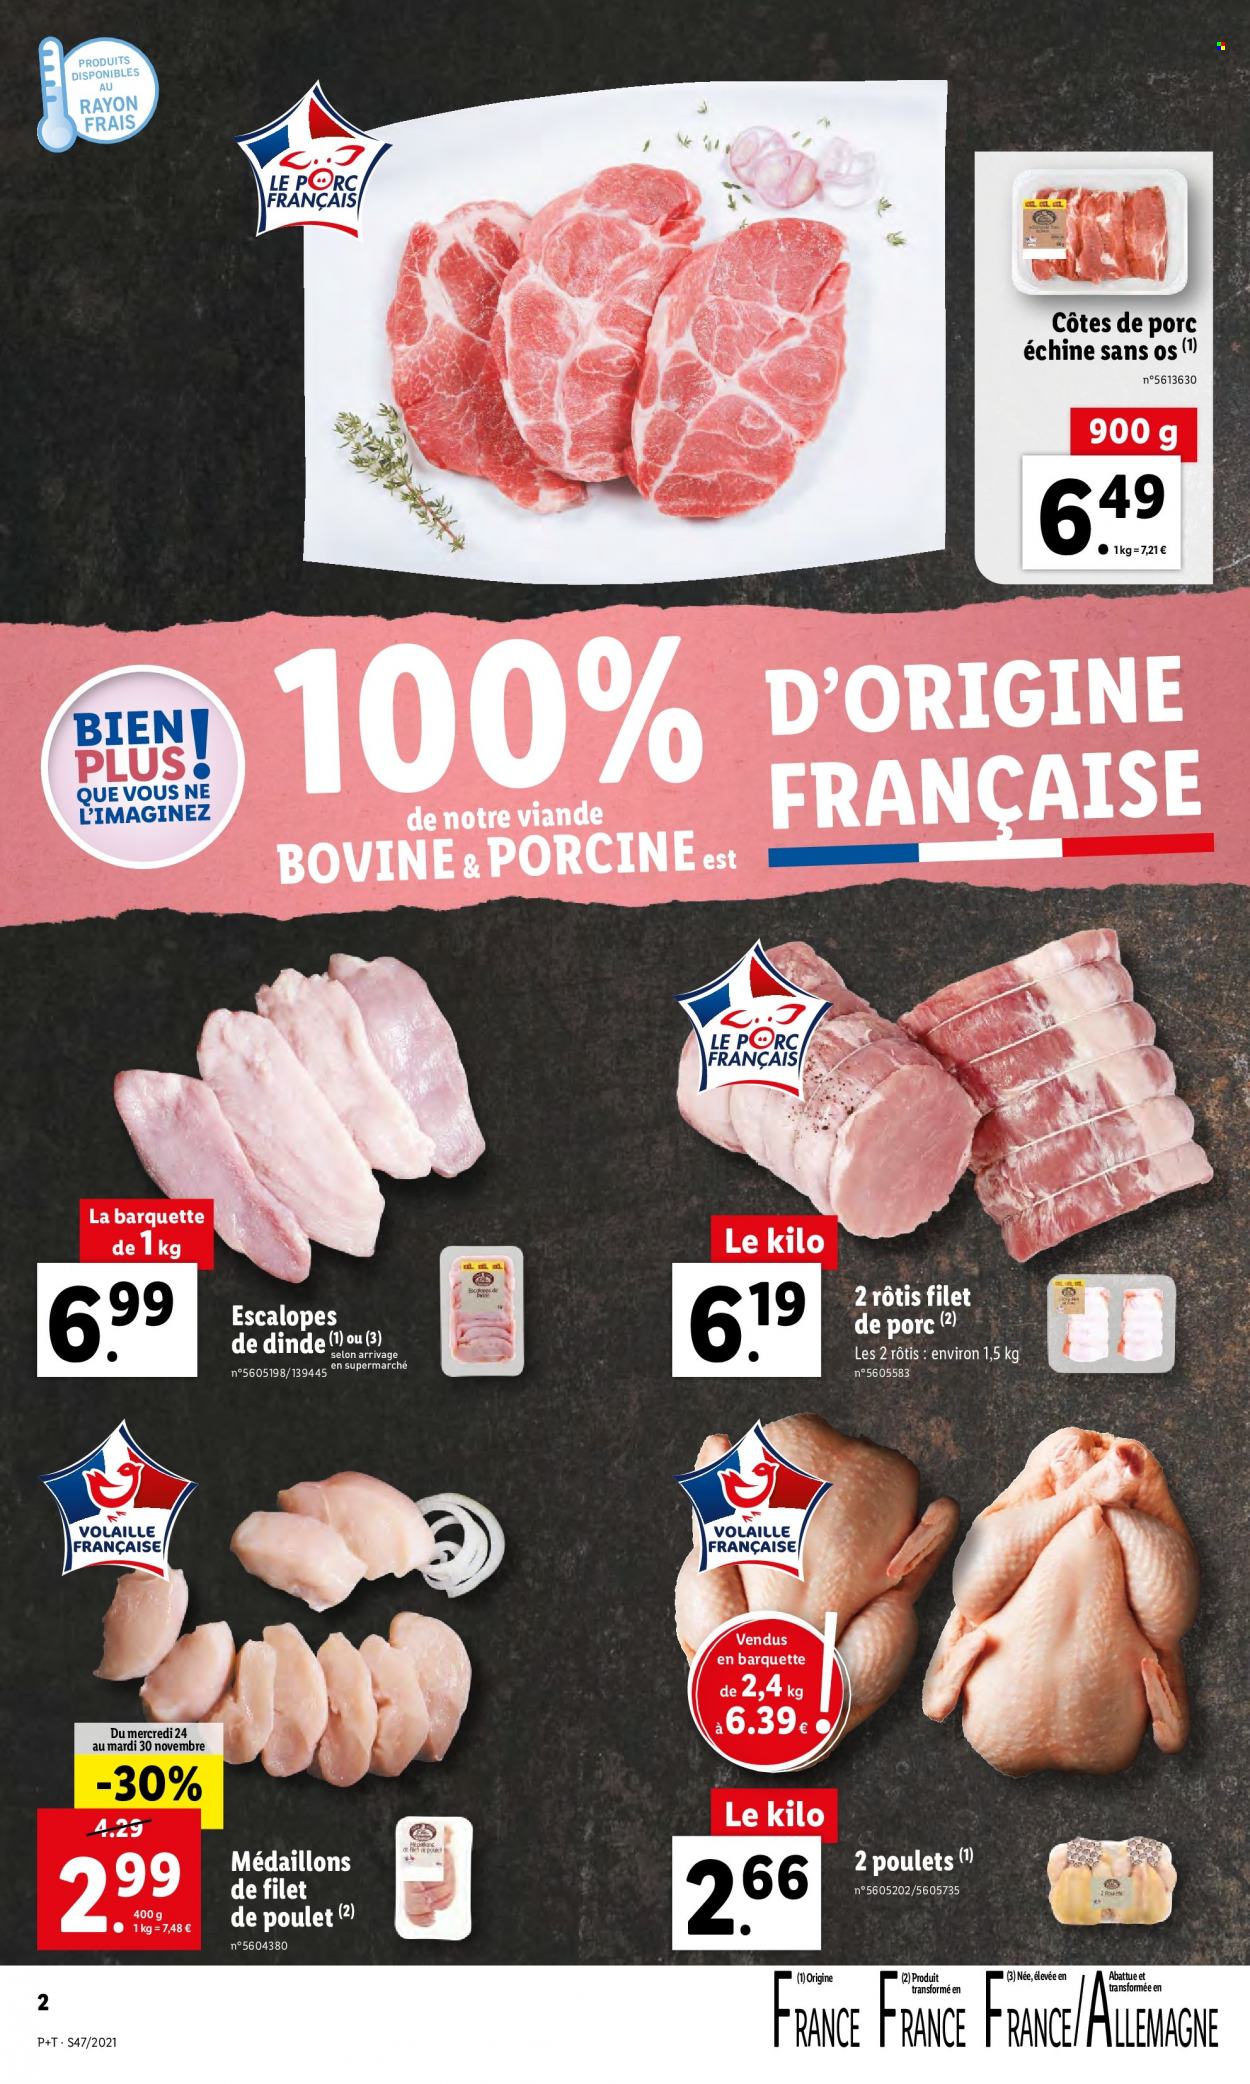 thumbnail - Catalogue Lidl - 24/11/2021 - 30/11/2021 - Produits soldés - côtes de porc, côtes de porc échine, escalope, rôti de porc, viande de porc, filet de poulet, viande de poulet, viande de dinde, escalope de dinde. Page 2.